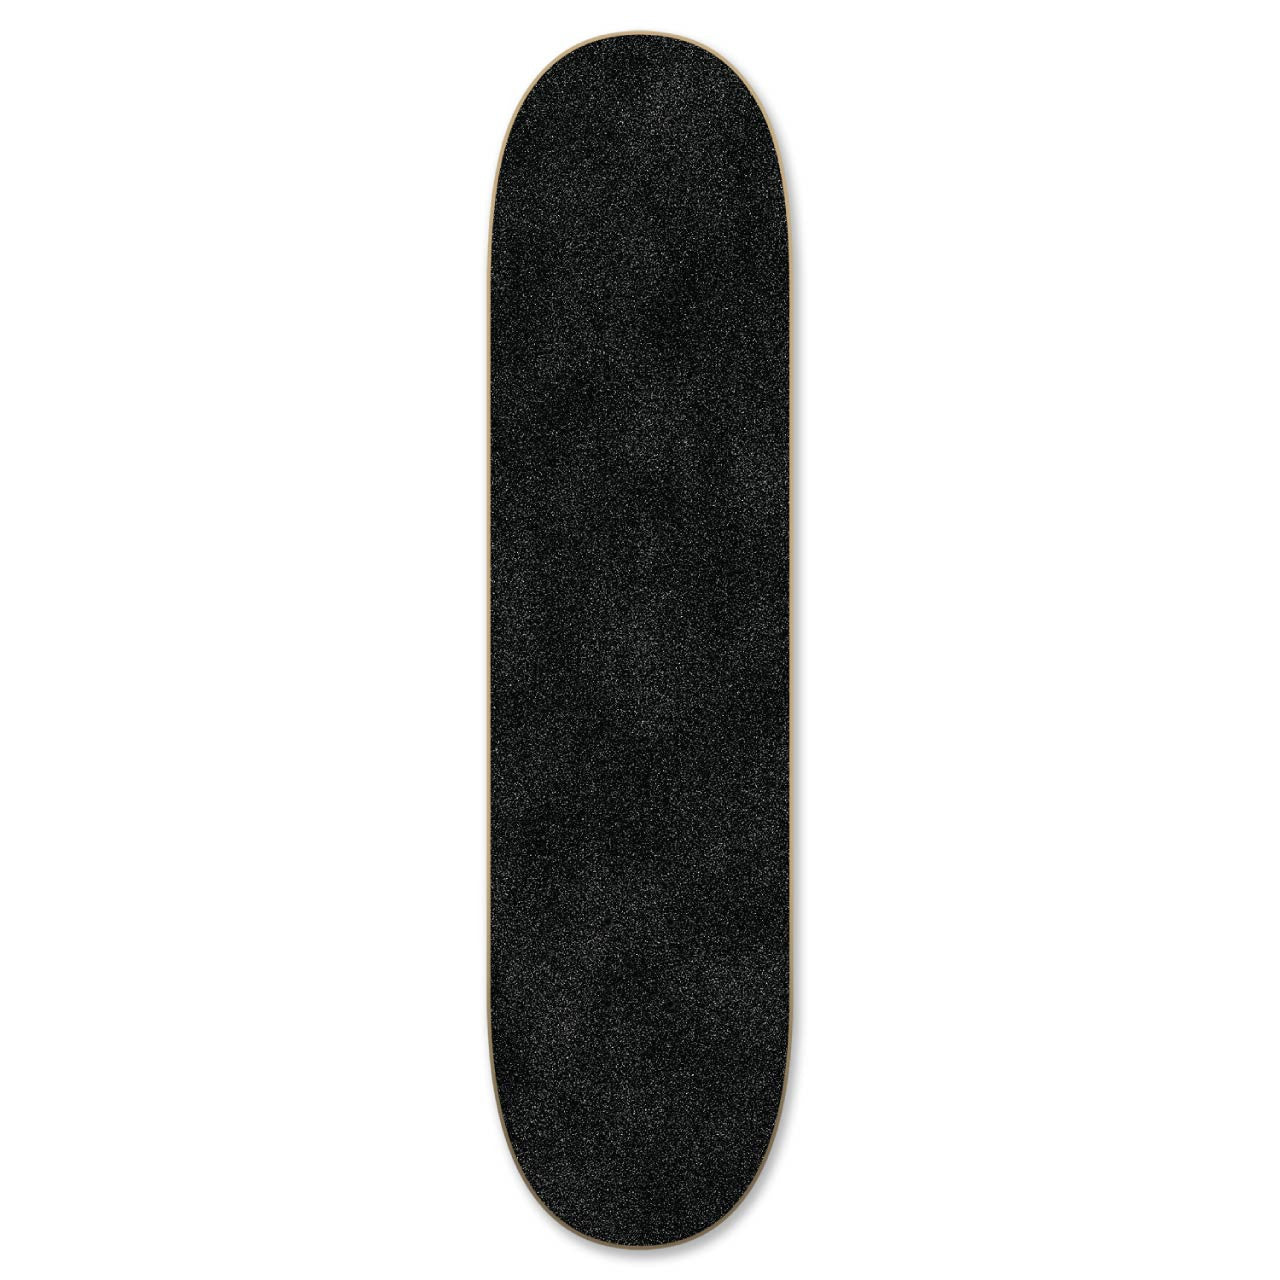 Graphic Skateboard Deck - Retro Series - Bralwer